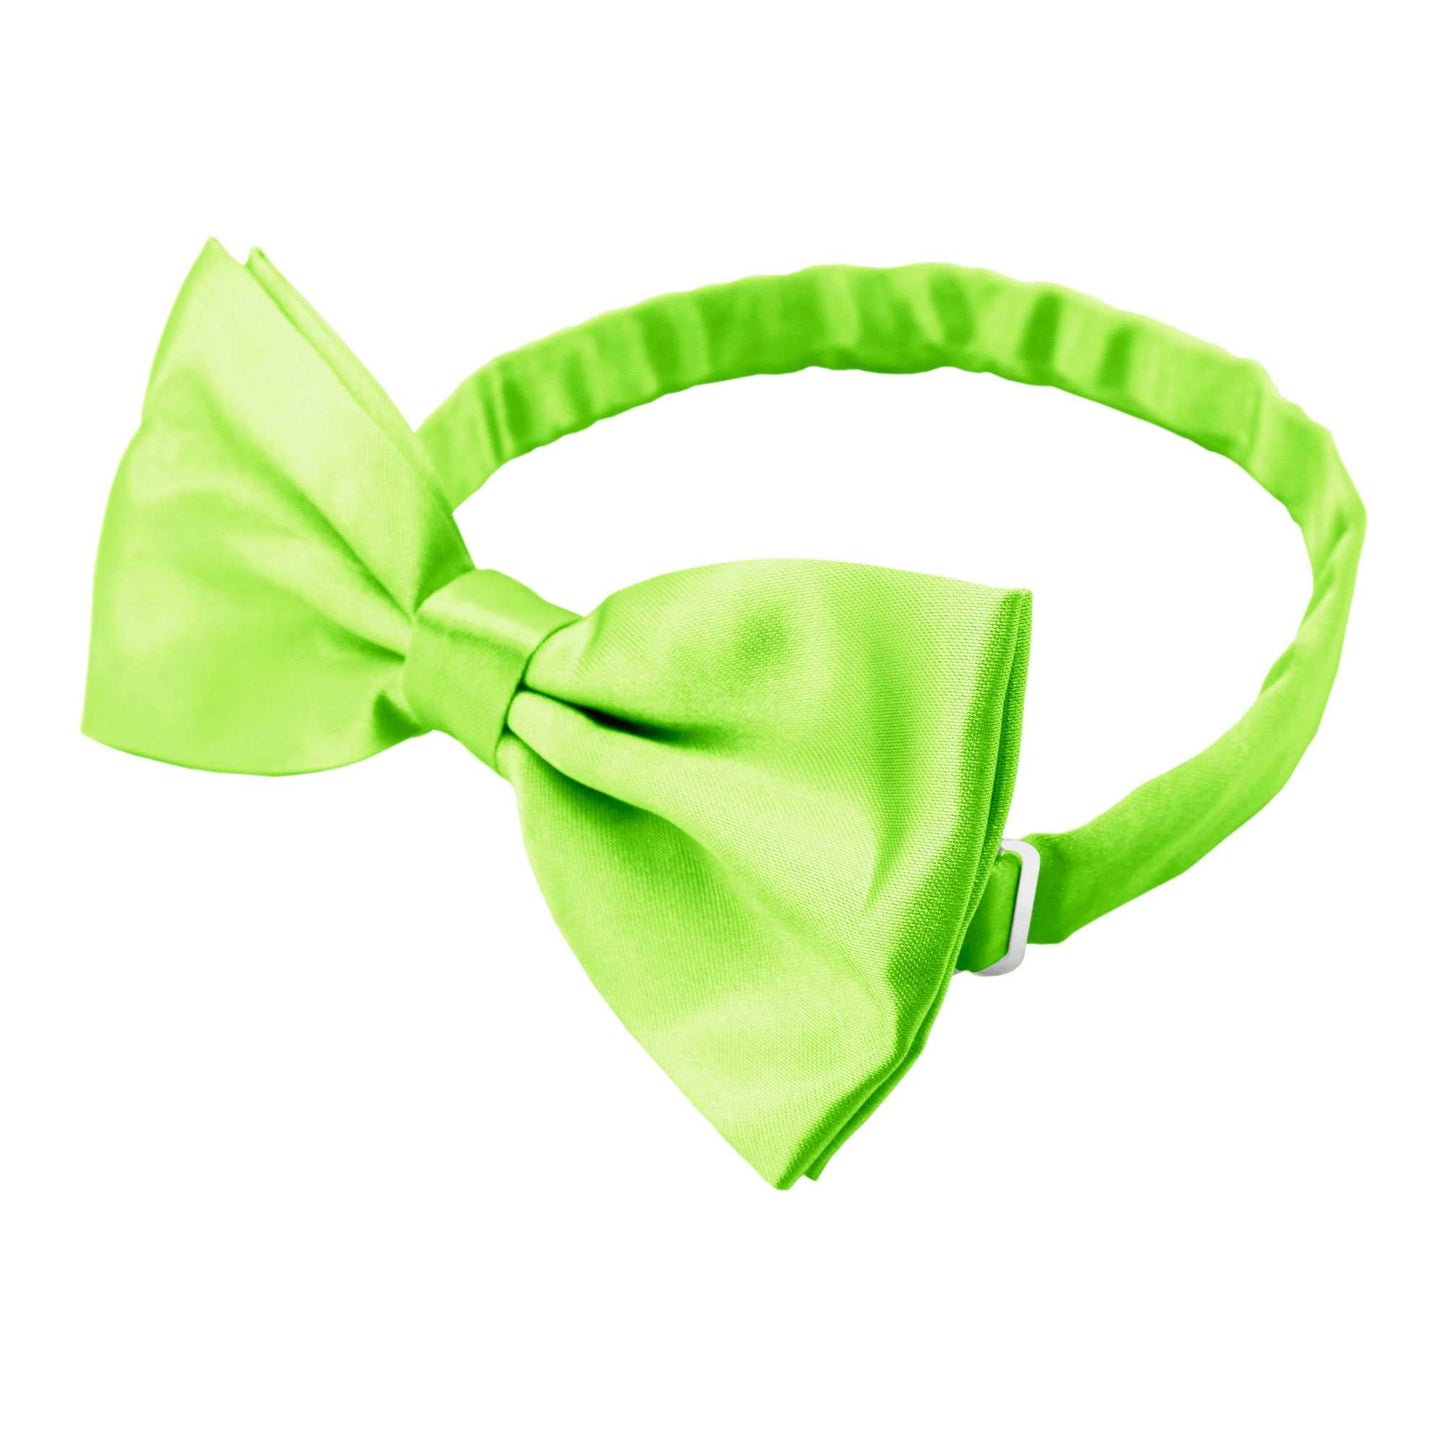 Pajarita Elegante para Hombre de color Verde Lima Diseño Unicolor con Cierre de Gancho Clip Ajustable, 12cm x 6cm, Celebraciones, Fiestas, Trabajo, Bodas y Eventos